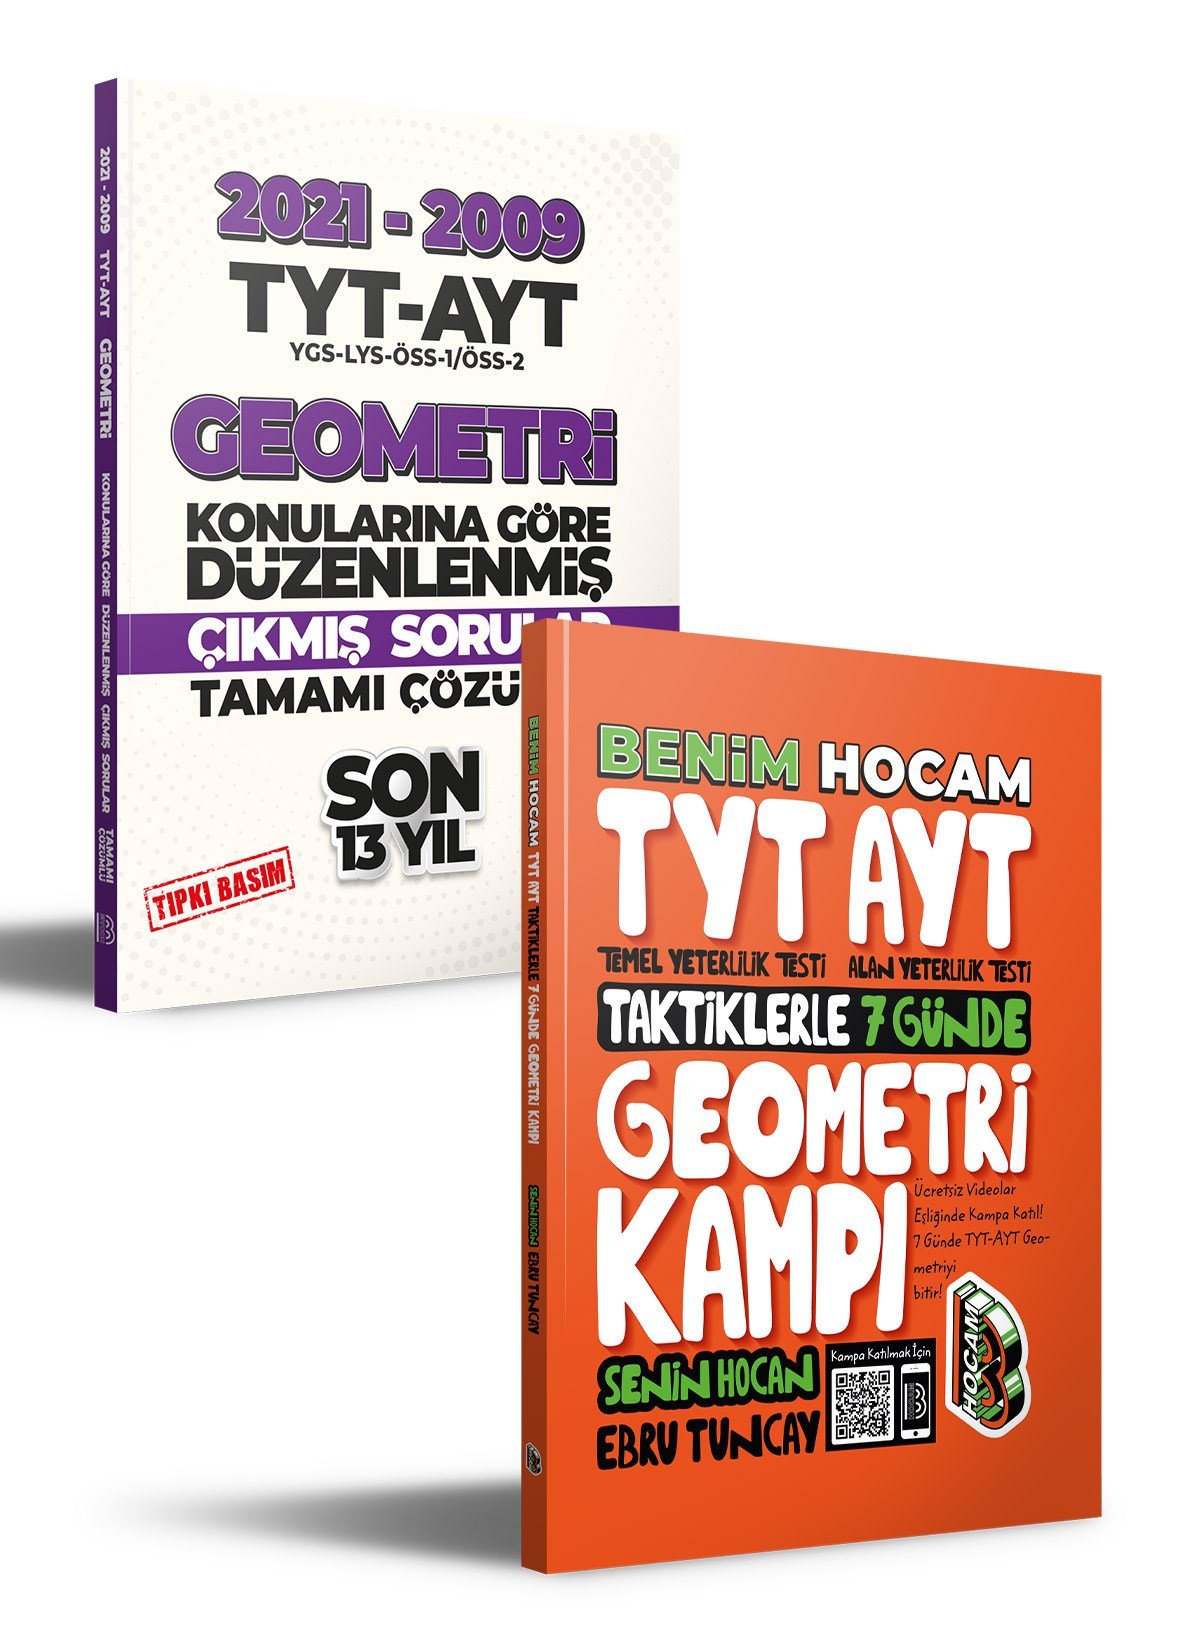 TYT AYT Geometri Kamp Kitabı ve Çıkmış Sorular Seti Benim Hocam Yayınları